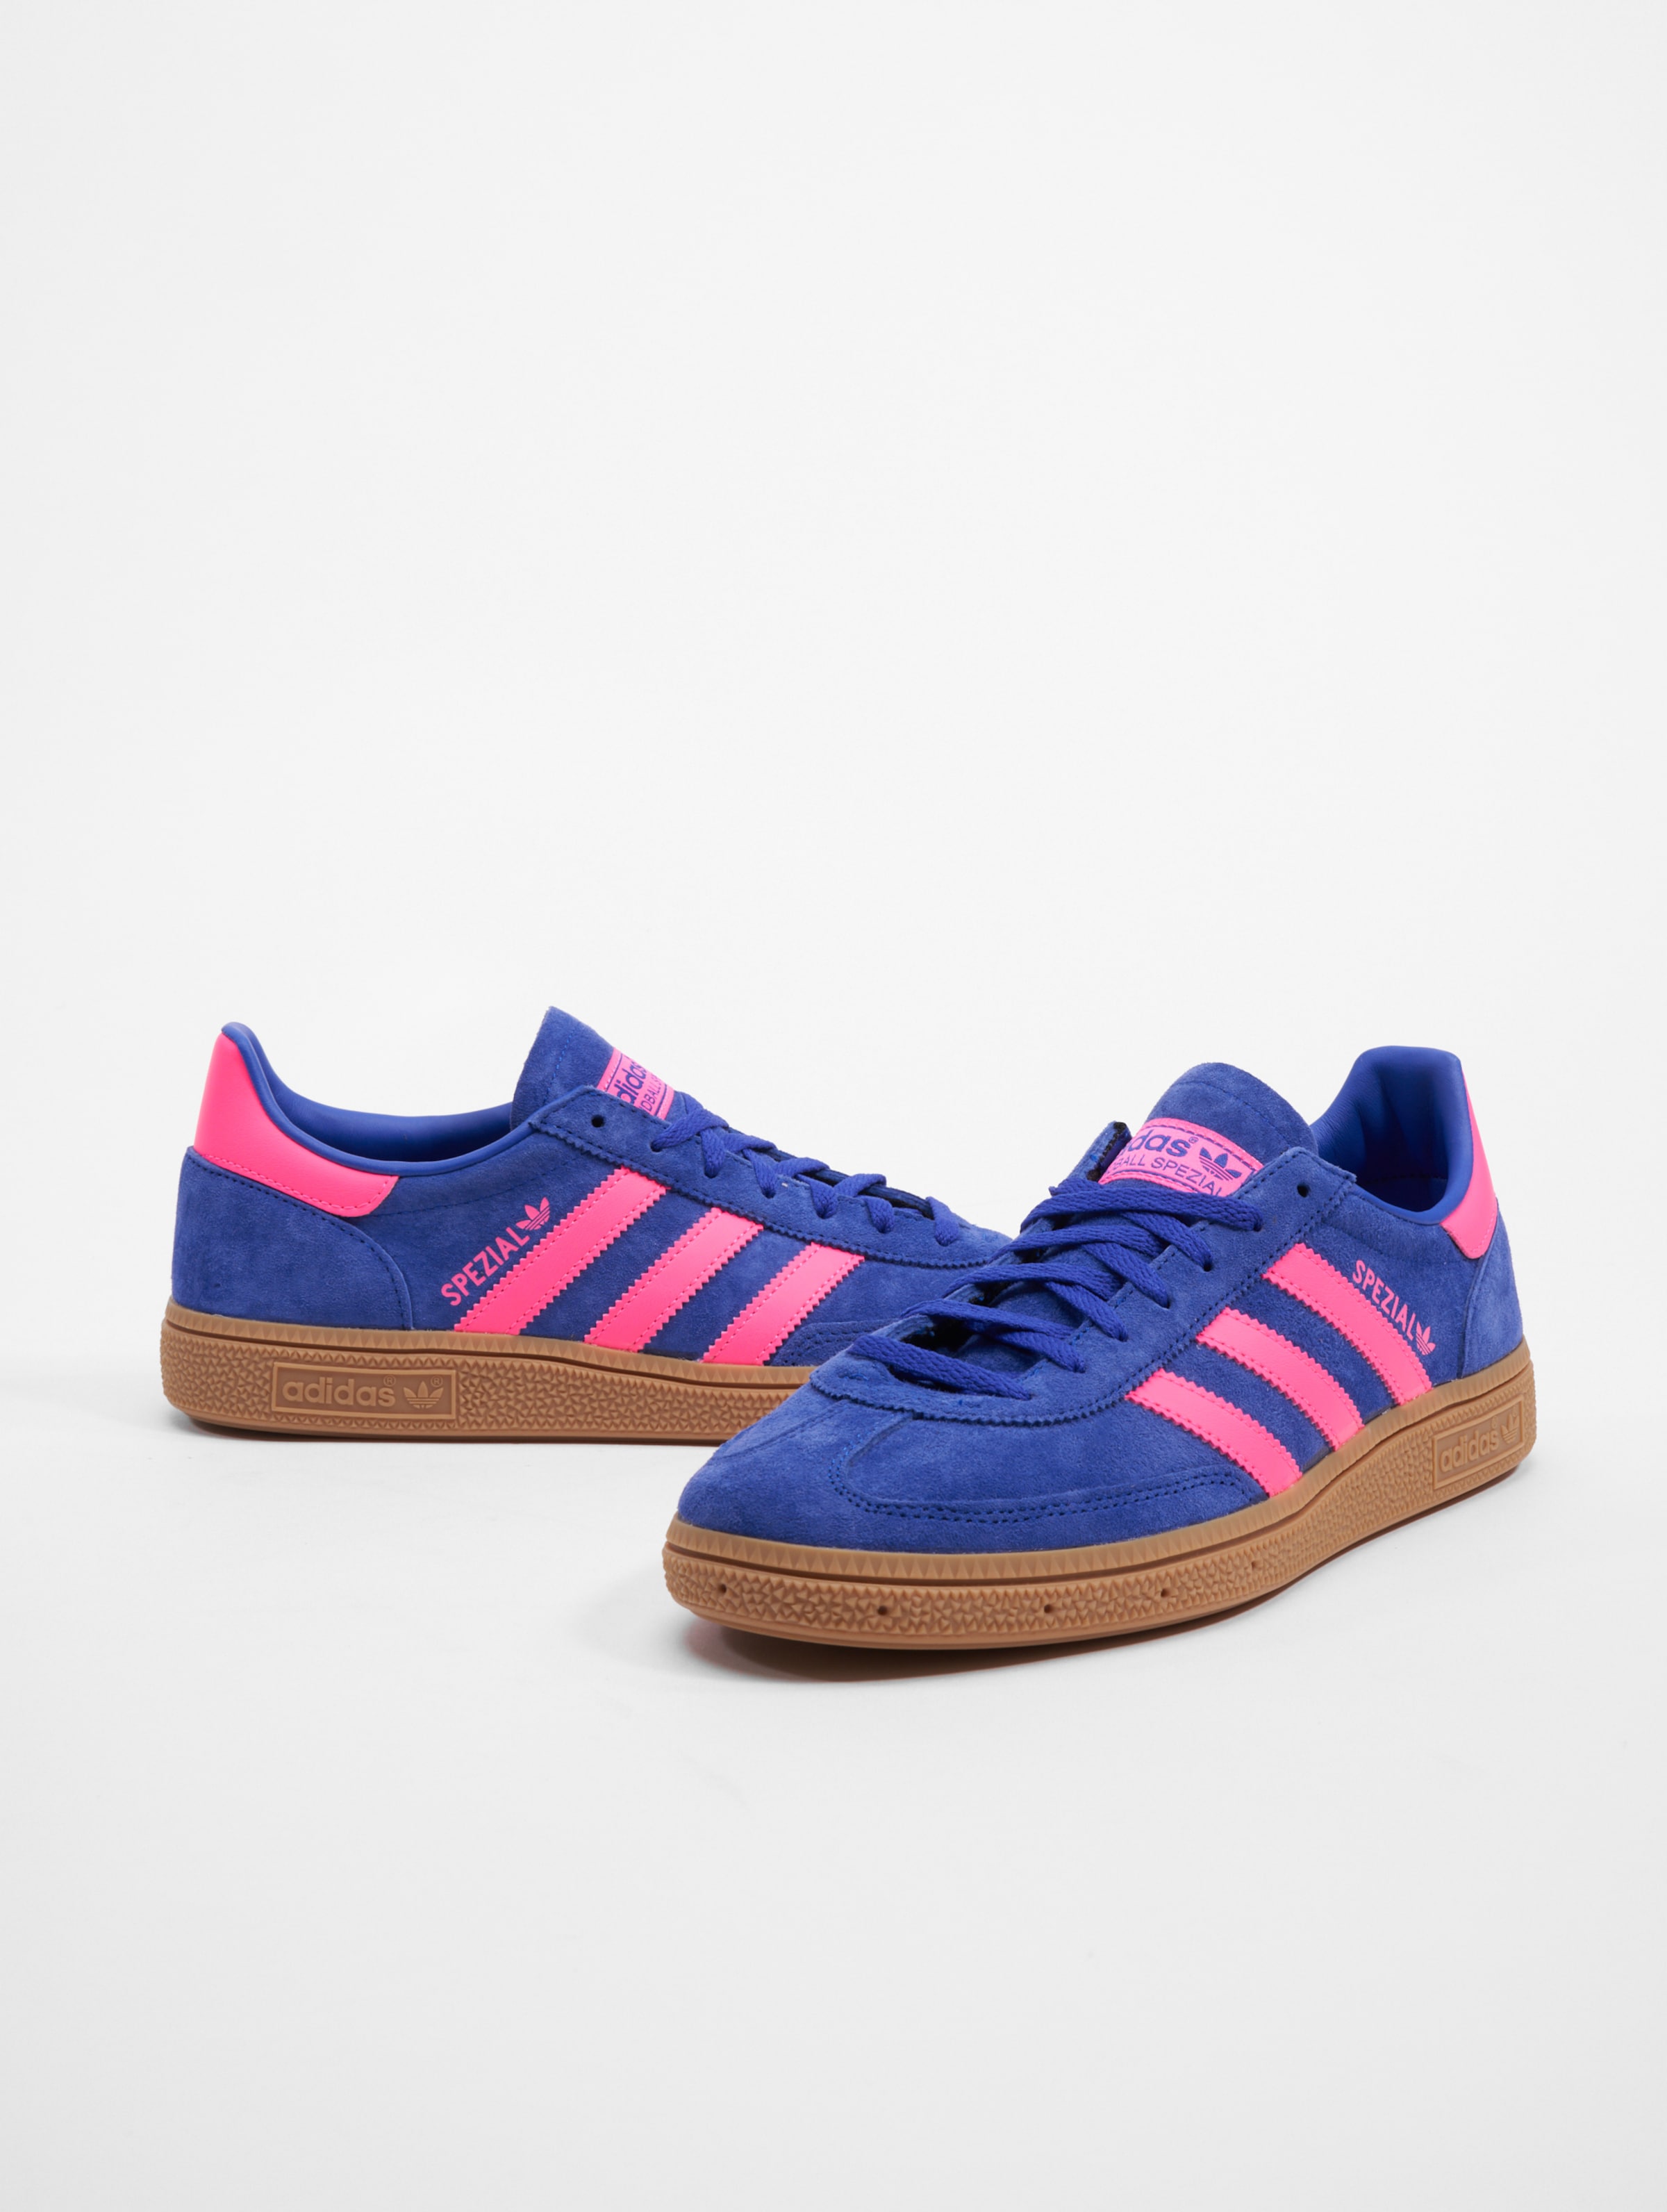 adidas Originals Handball Spezial Sneakers Frauen,Männer,Unisex op kleur blauw, Maat 42